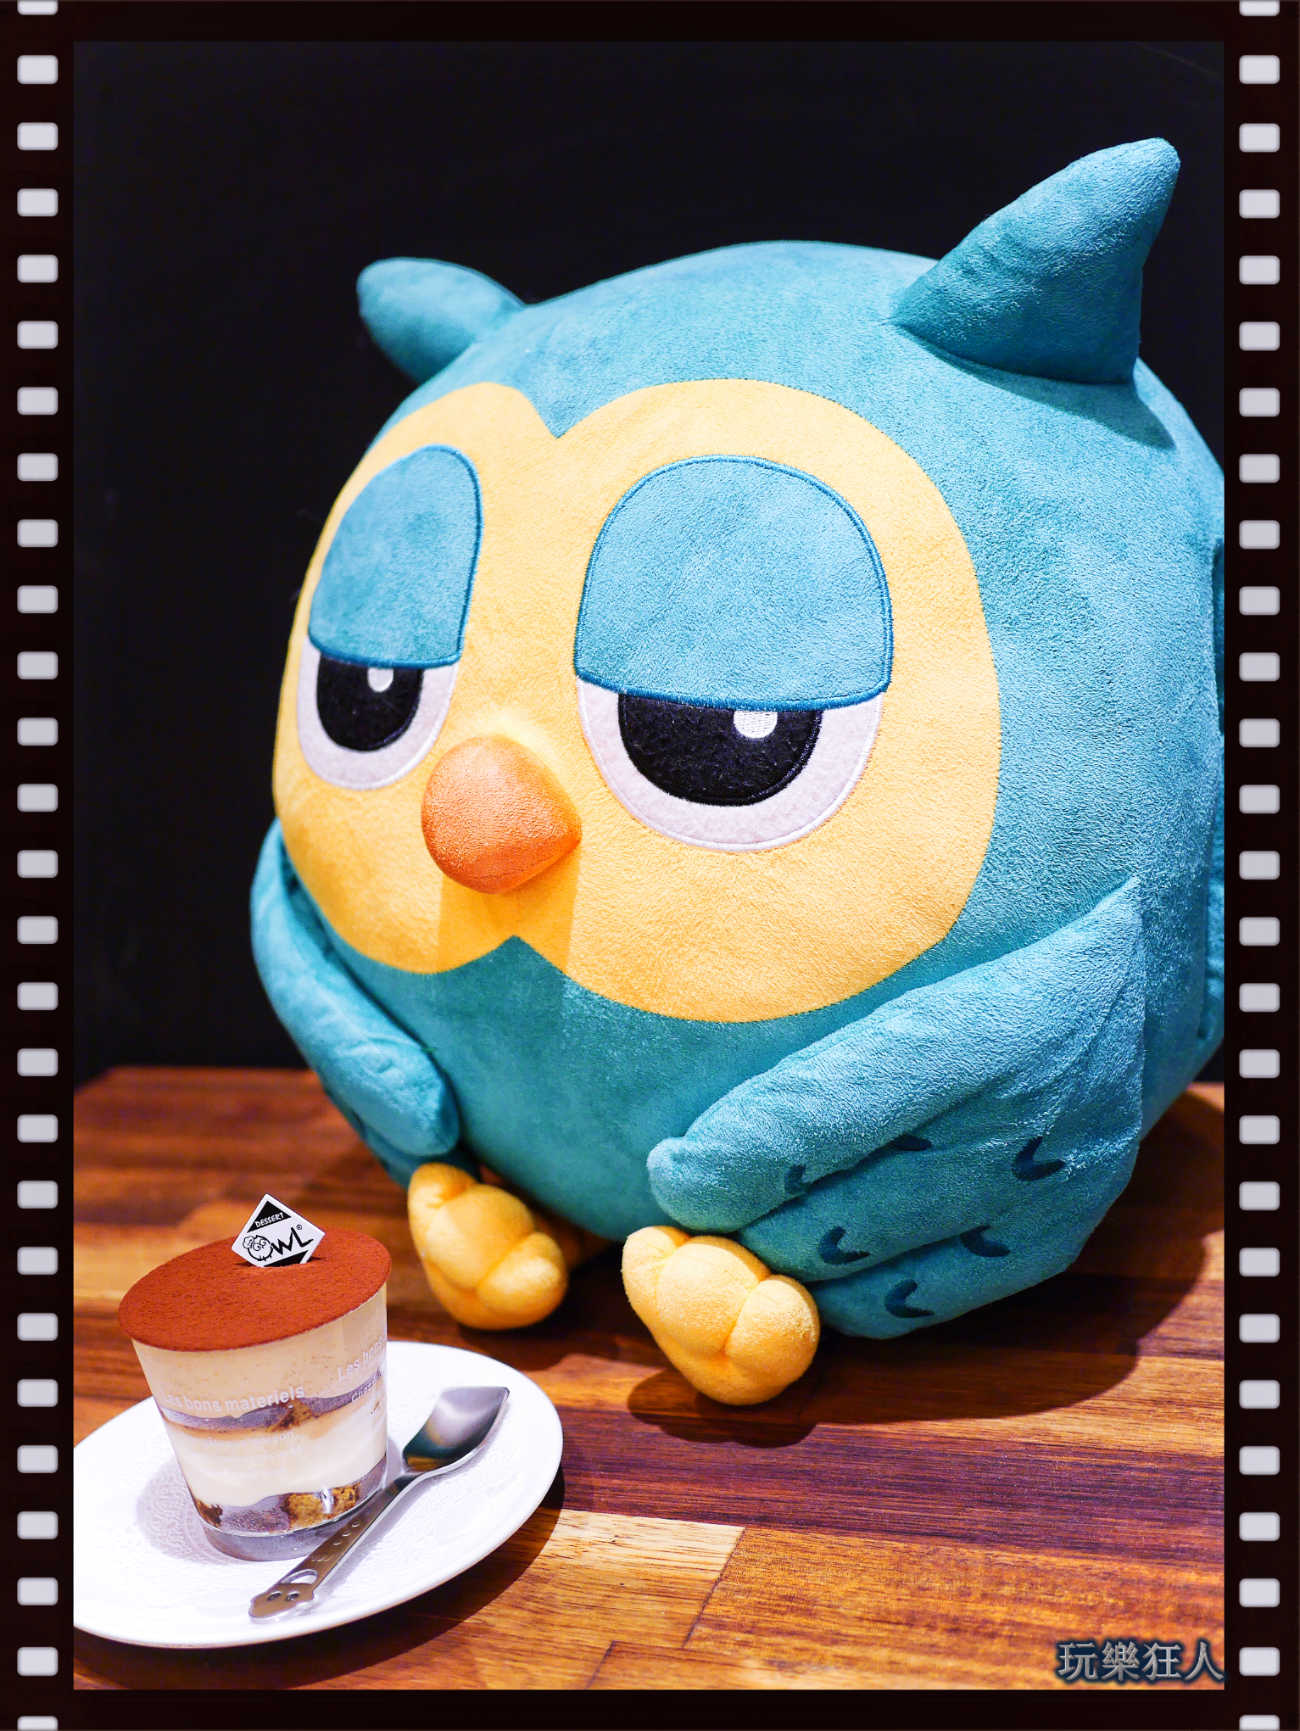 『貓頭鷹法式手工甜點 』咖啡廳-吉祥物&提拉米蘇